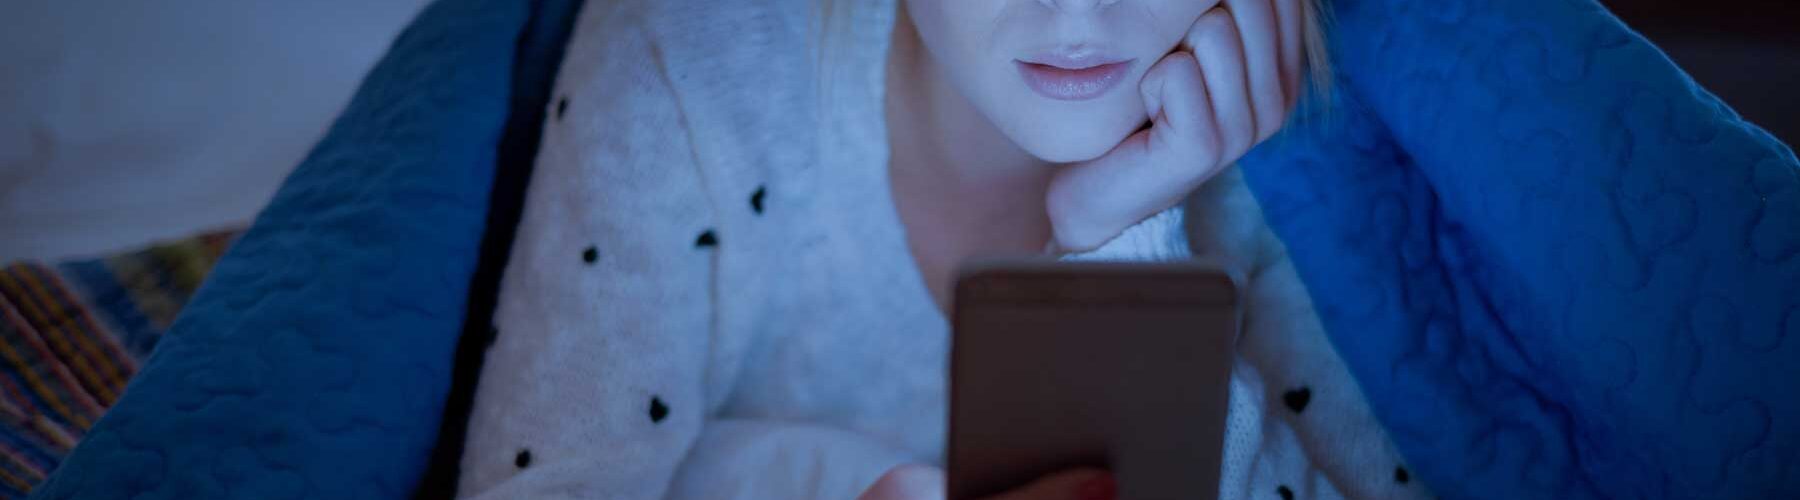 O que é Nomofobia |  Você conhece as consequências do vício em celular?